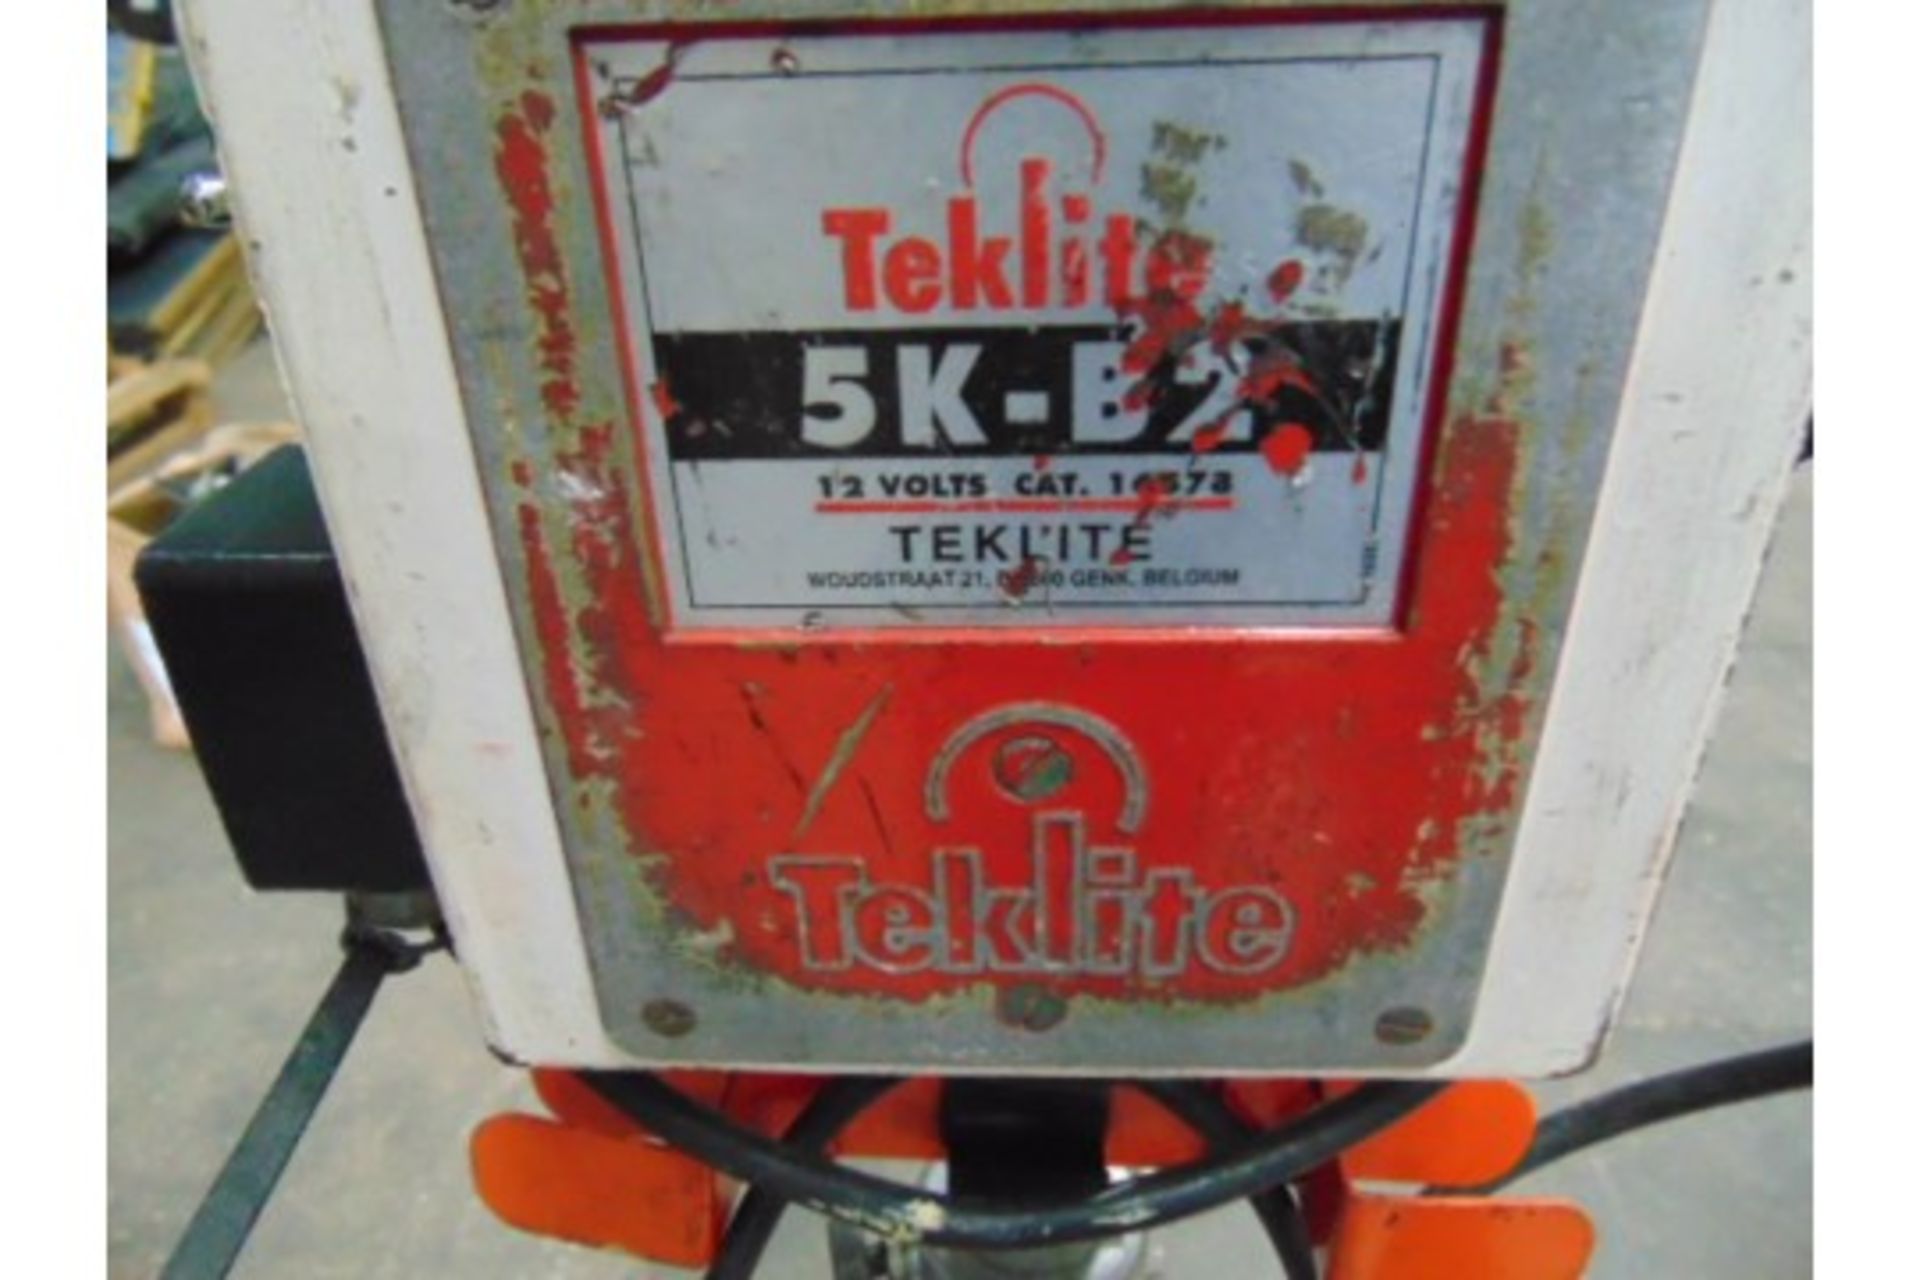 Teklite 5K-B2 Portable Worklight with Teklite Senior Battery - Image 2 of 4